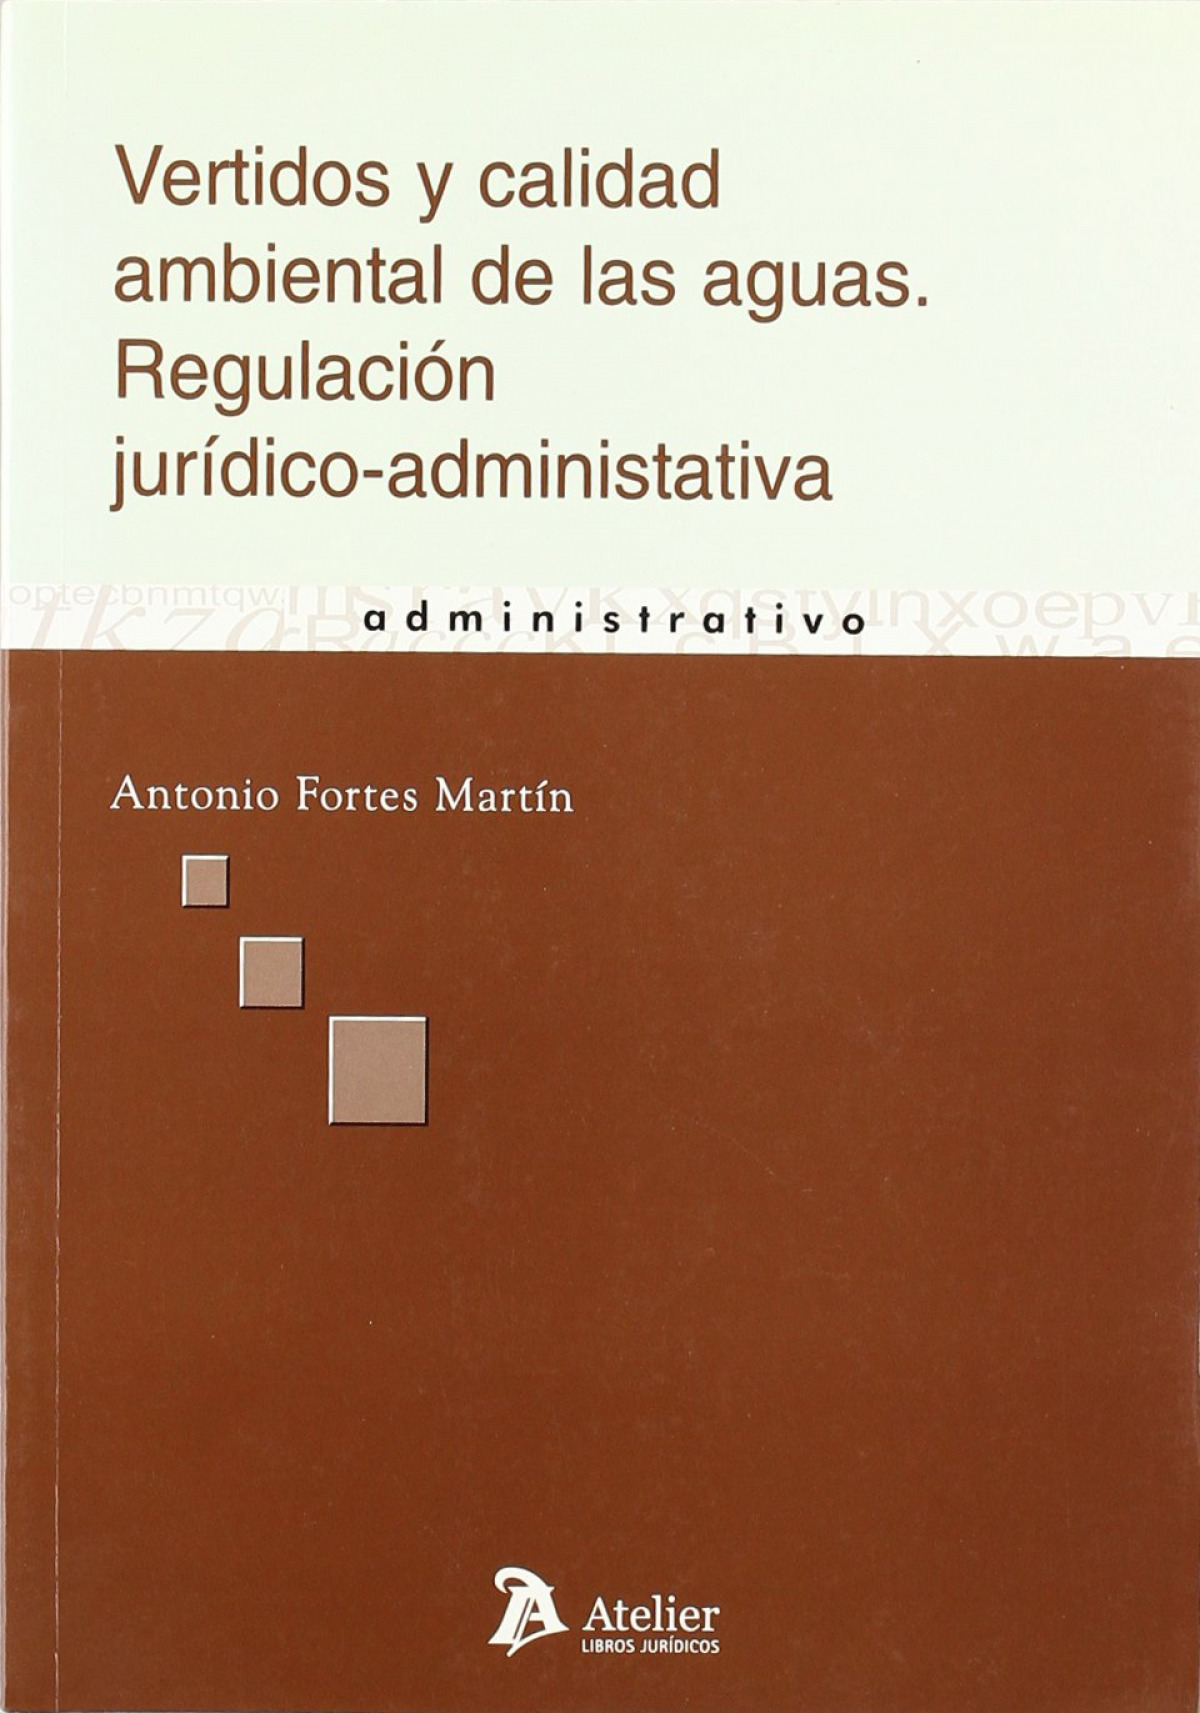 Vertidos y calidad ambiental de las aguas. Regulacion juridico-administrativa - Fortes Martin, Antonio